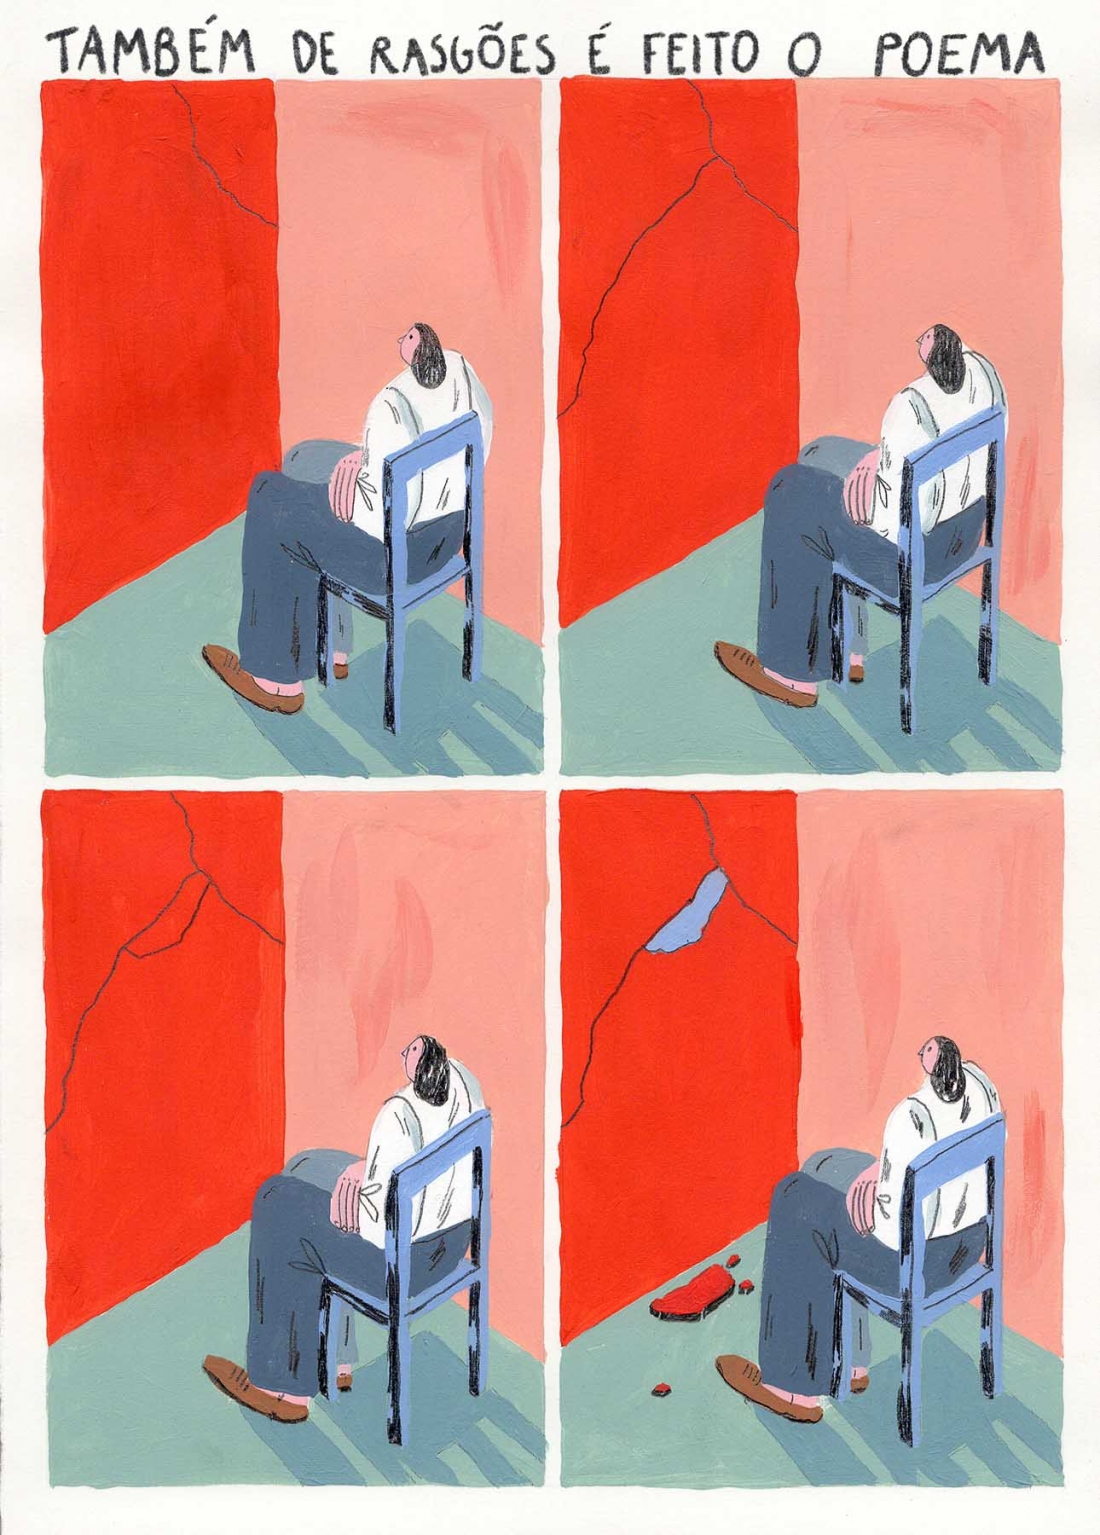 Ilustração a cores. Na imagem, estão representados 4 momentos de uma mesma mesma ação: uma pessoa sentada numa cadeira a olhar para uma parede. À medida que a ação de desenrola, a parede vai ruindo. No topo lê-se: 